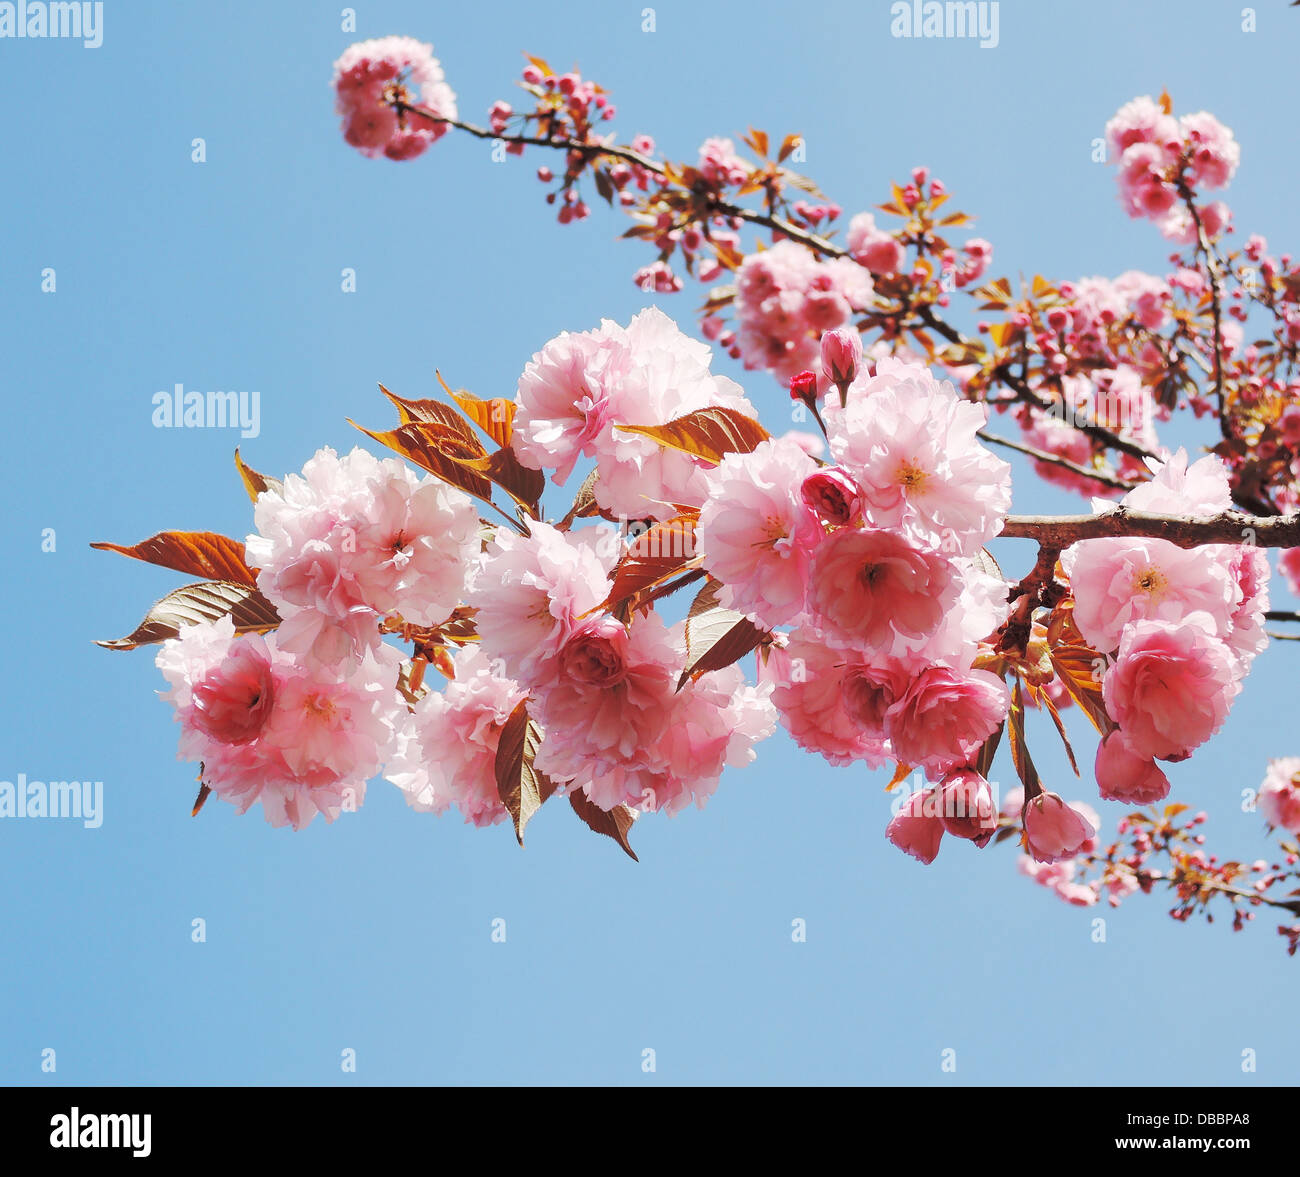 Sfondo, blumi, blossom, blossom branch, blossom cherry blossom, albero, bianco con fiori, fioritura tree, blu, blu cielo, blu Foto Stock